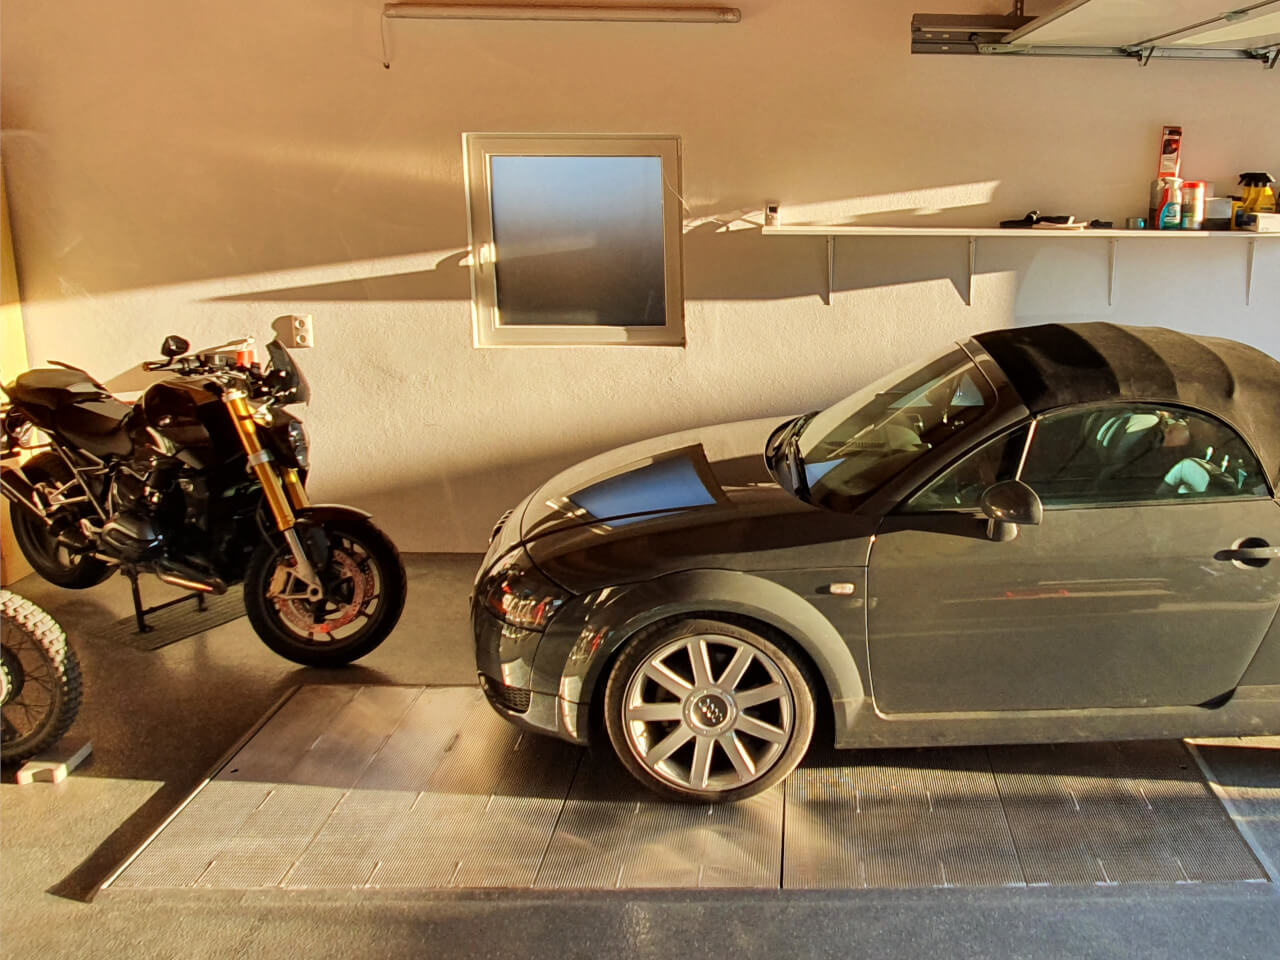 pkw und motorrad stehen auf einer grube mit abdeckung in einer garage